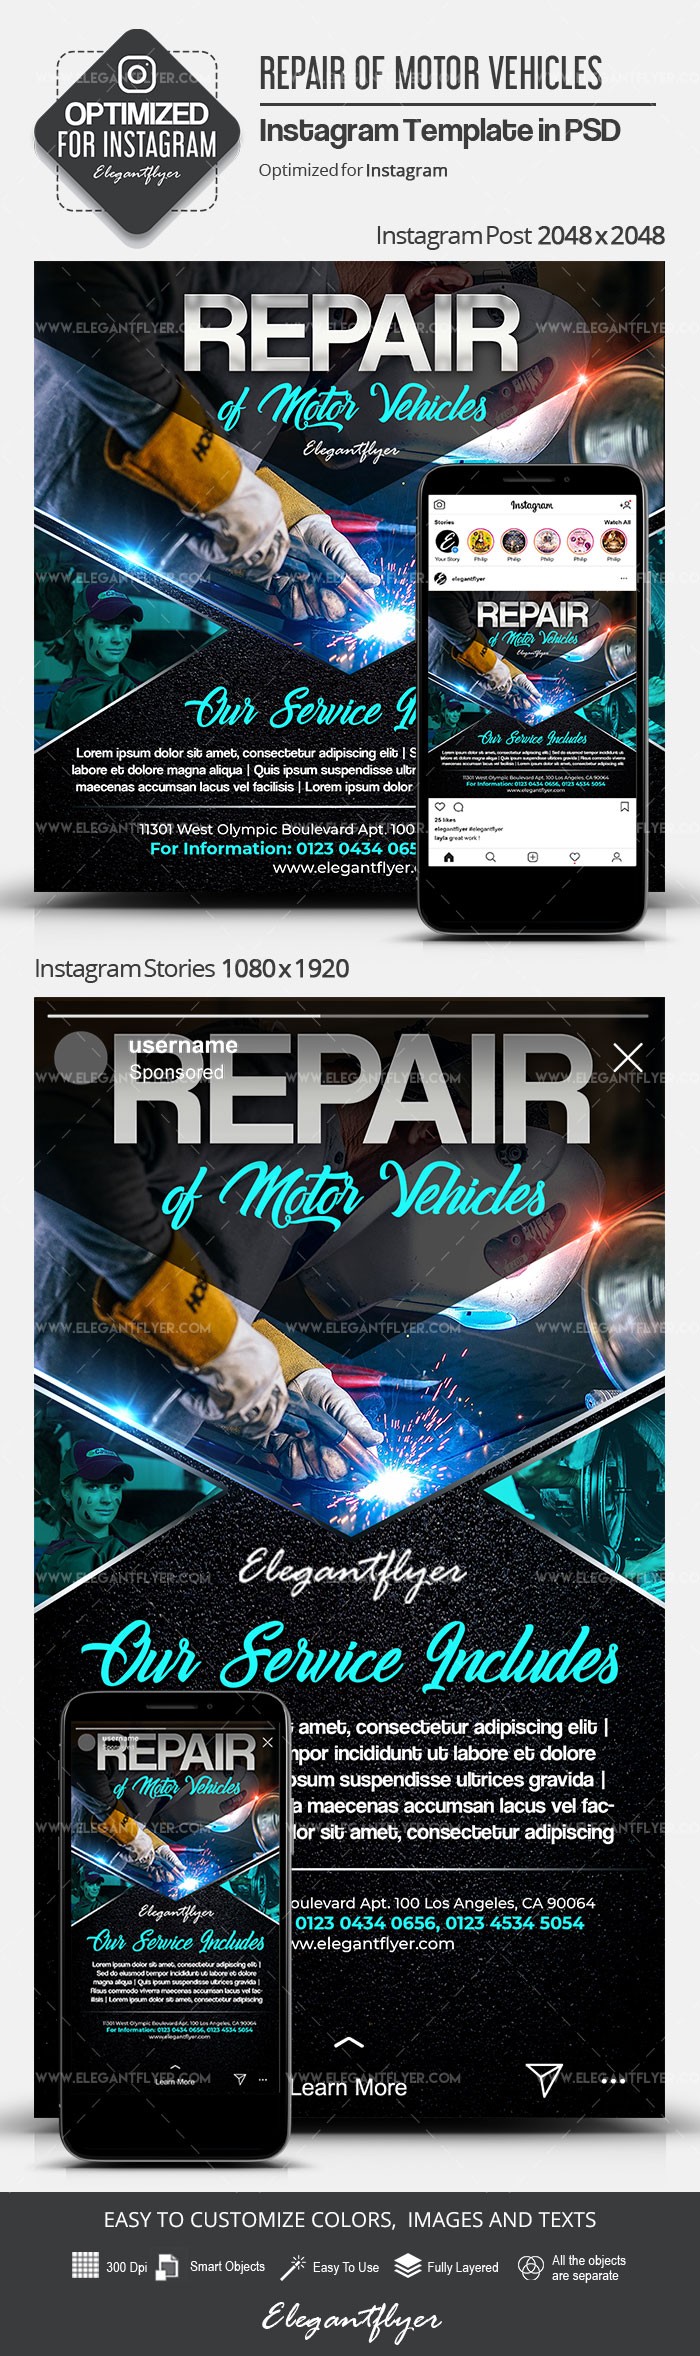 Repair of Motor Vehicles by ElegantFlyer